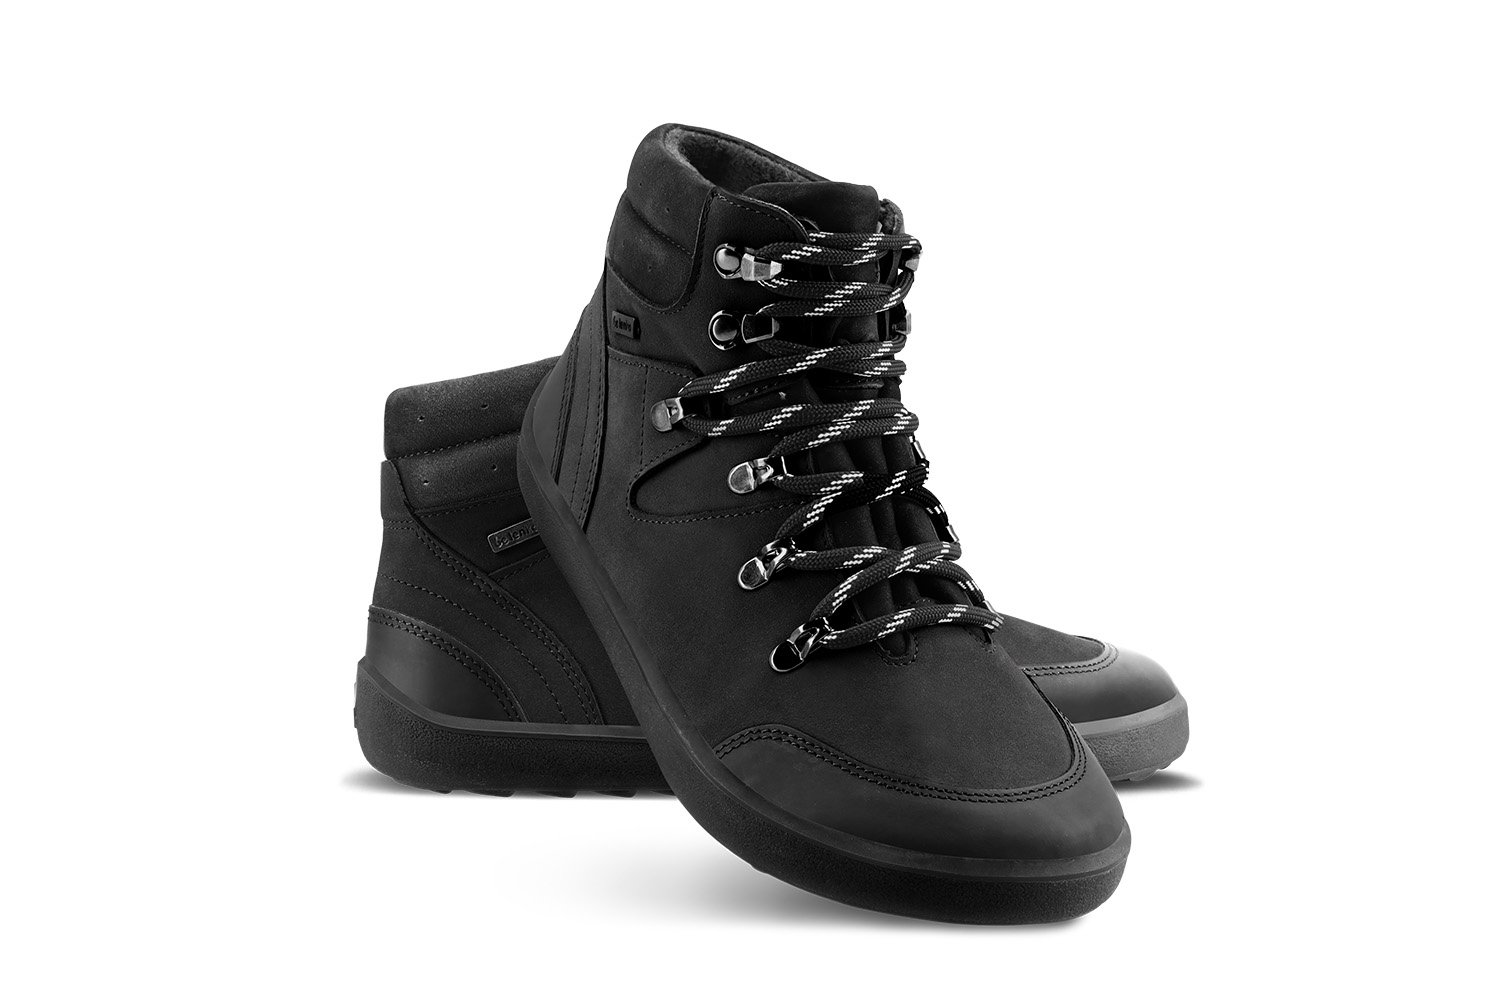 Barefoot Shoes Be Lenka Ranger 2.0 - All Black | Be Lenka